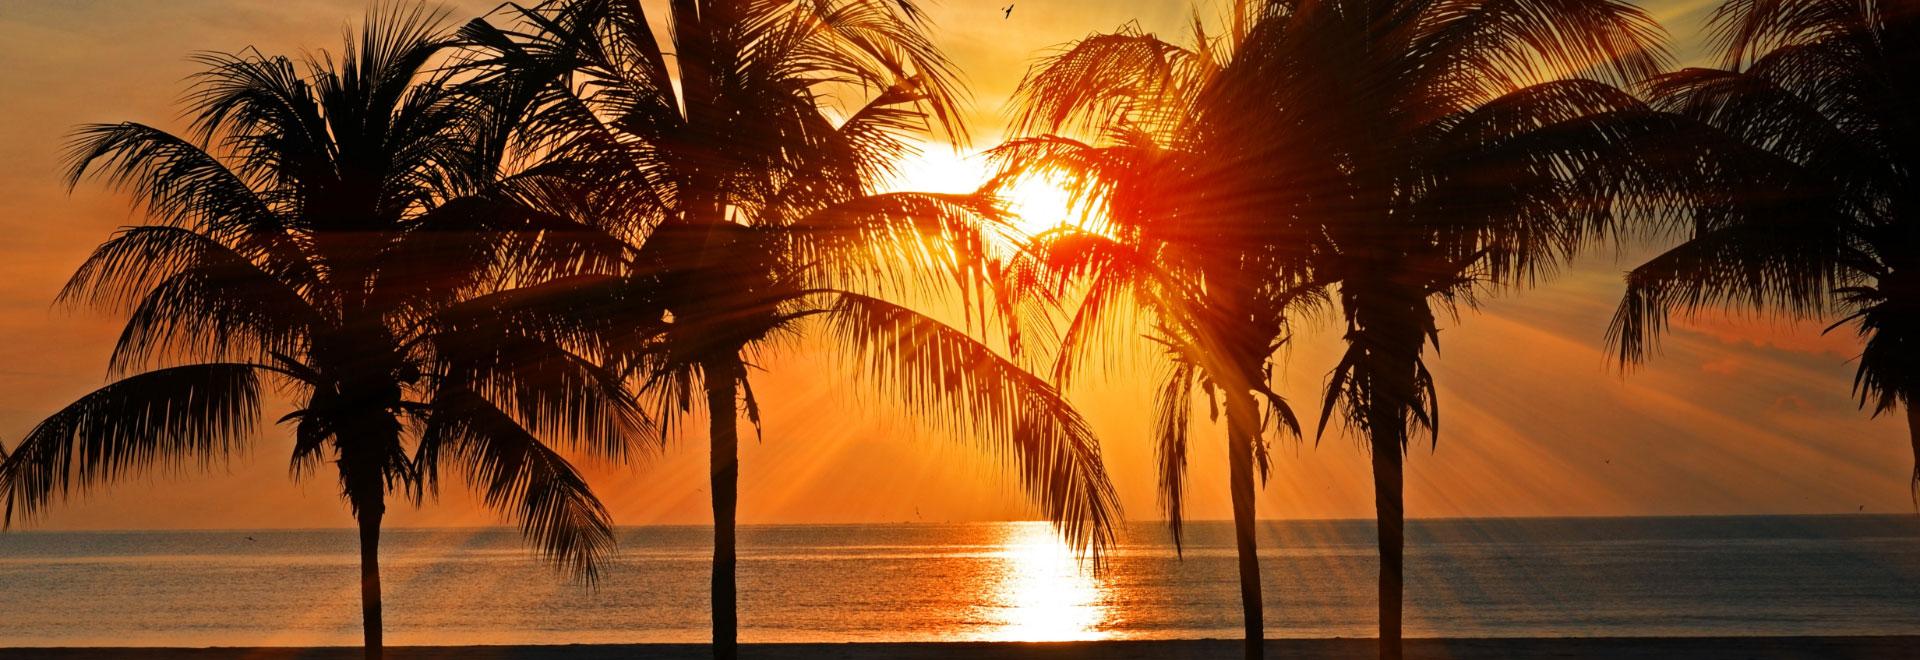 夕阳落在棕榈树之间的海面上